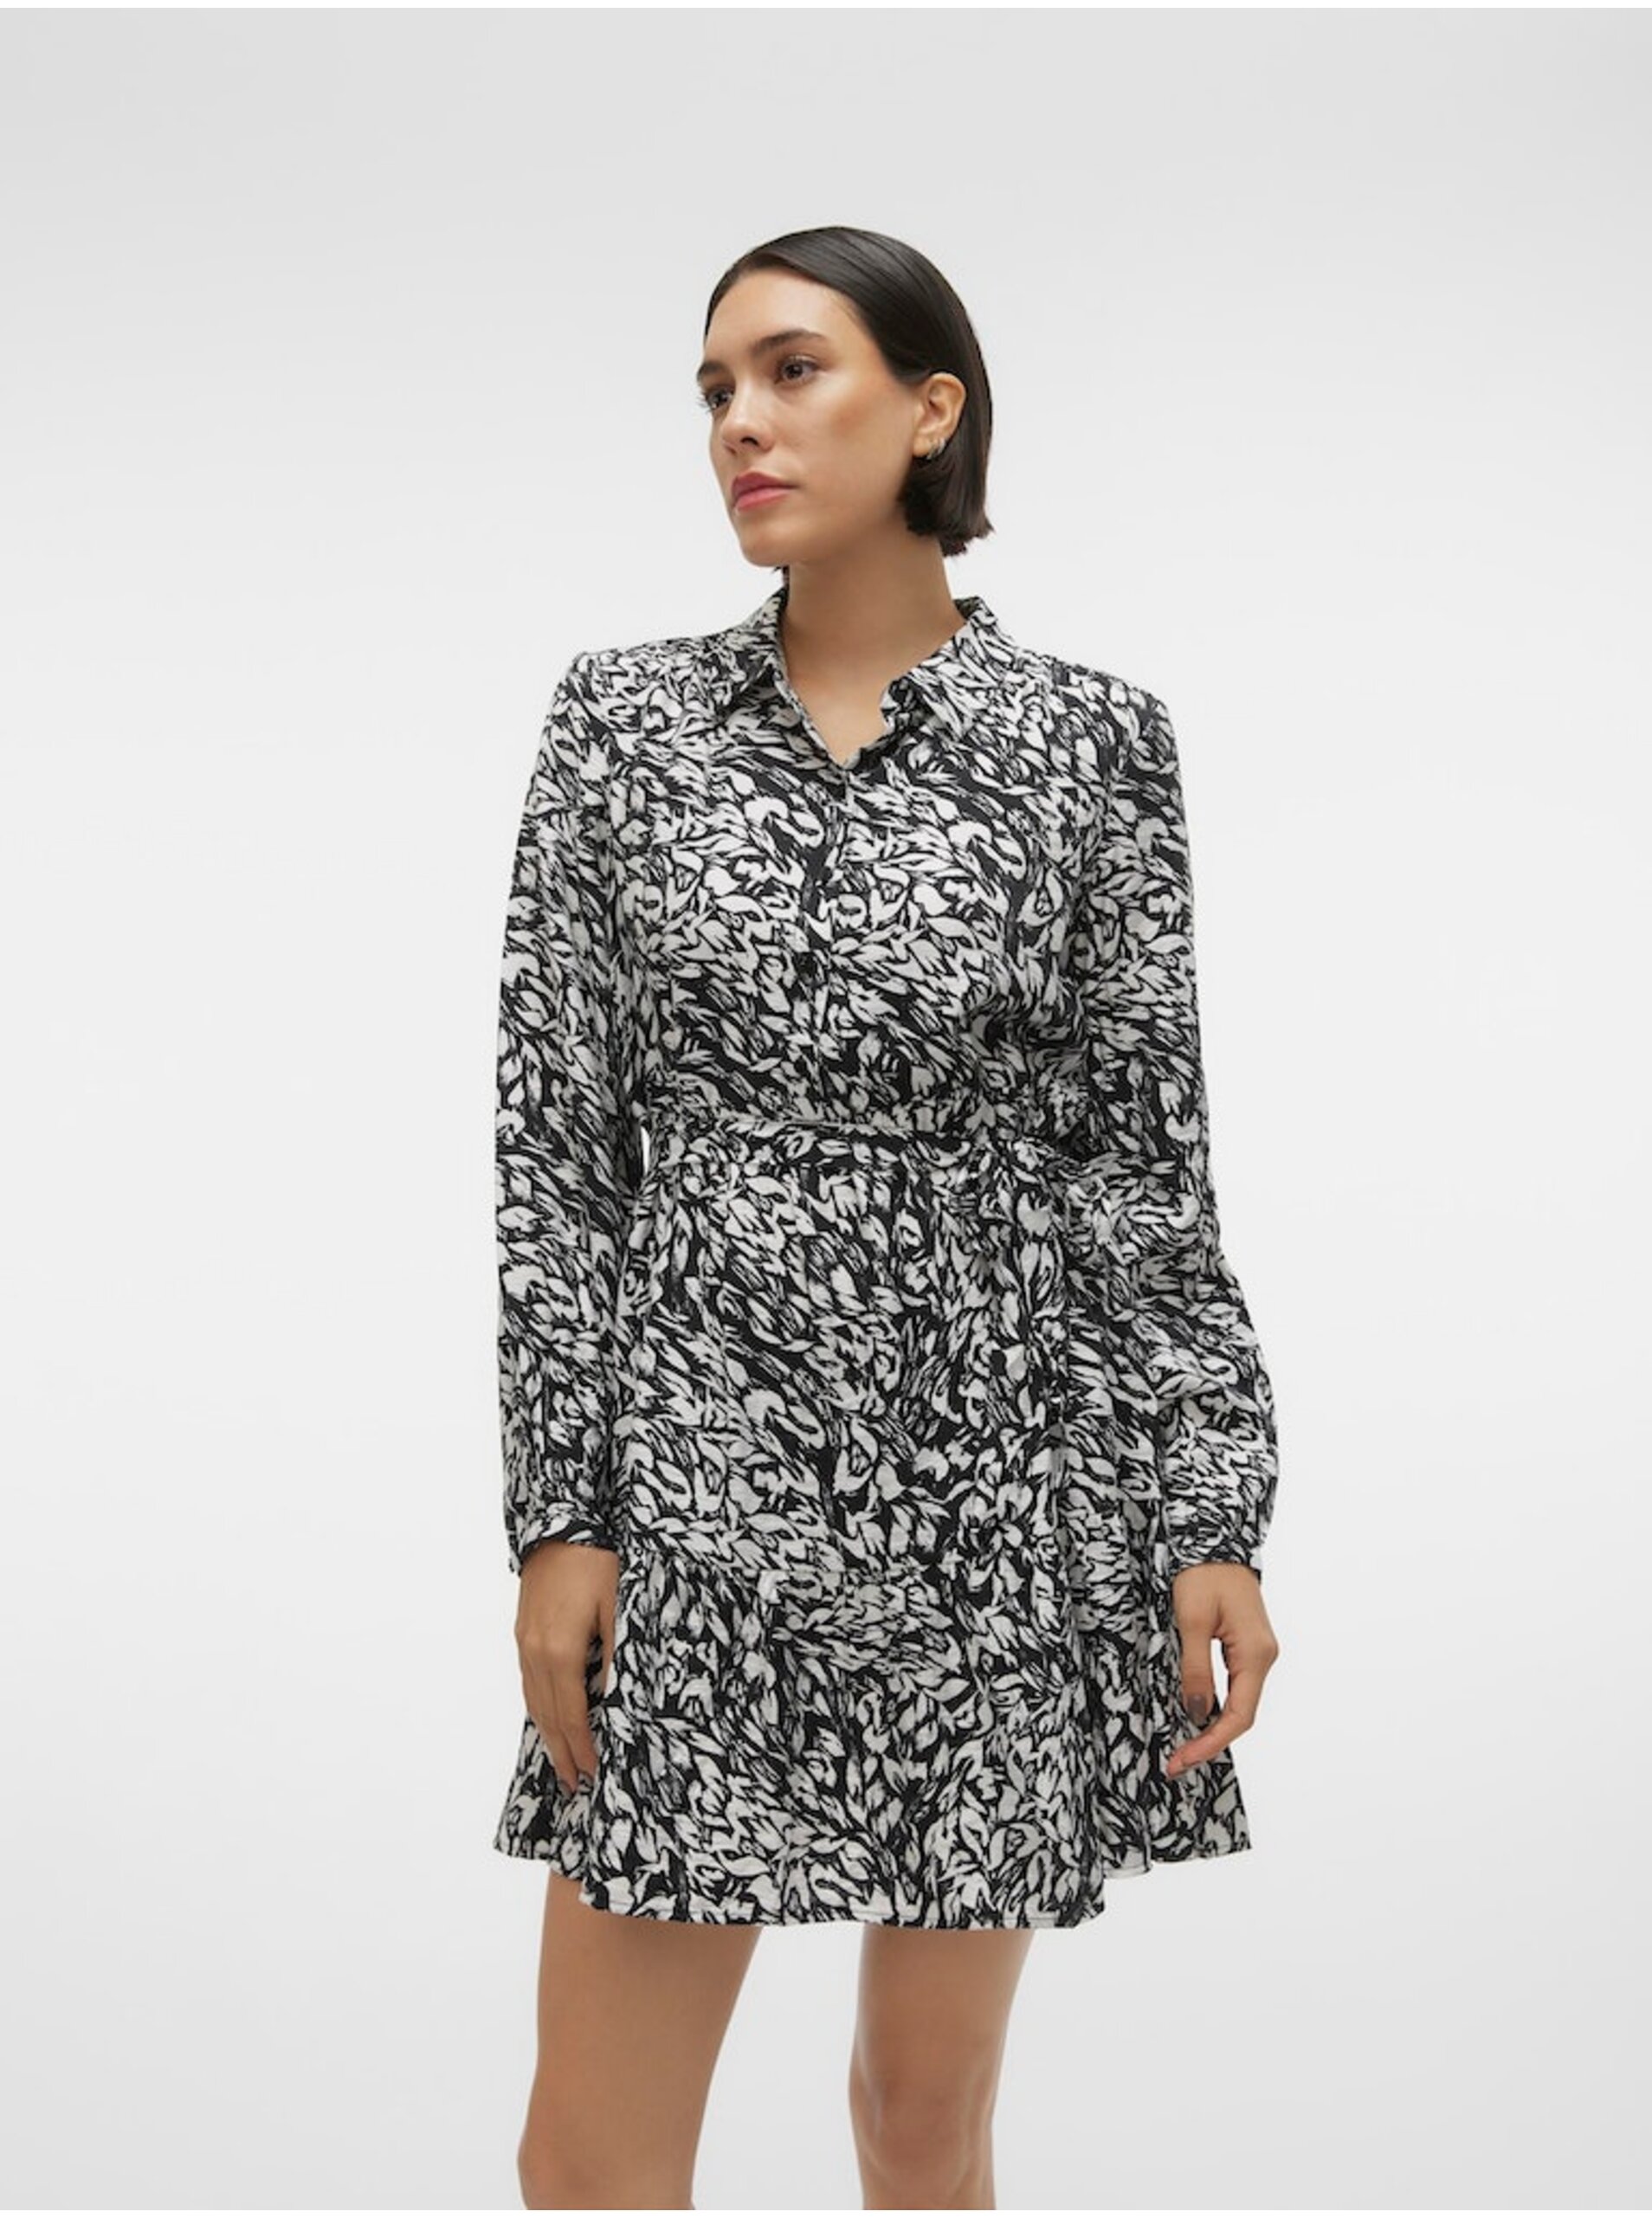 E-shop Bielo-čierne dámske vzorované košeľové šaty Vero Moda Debby